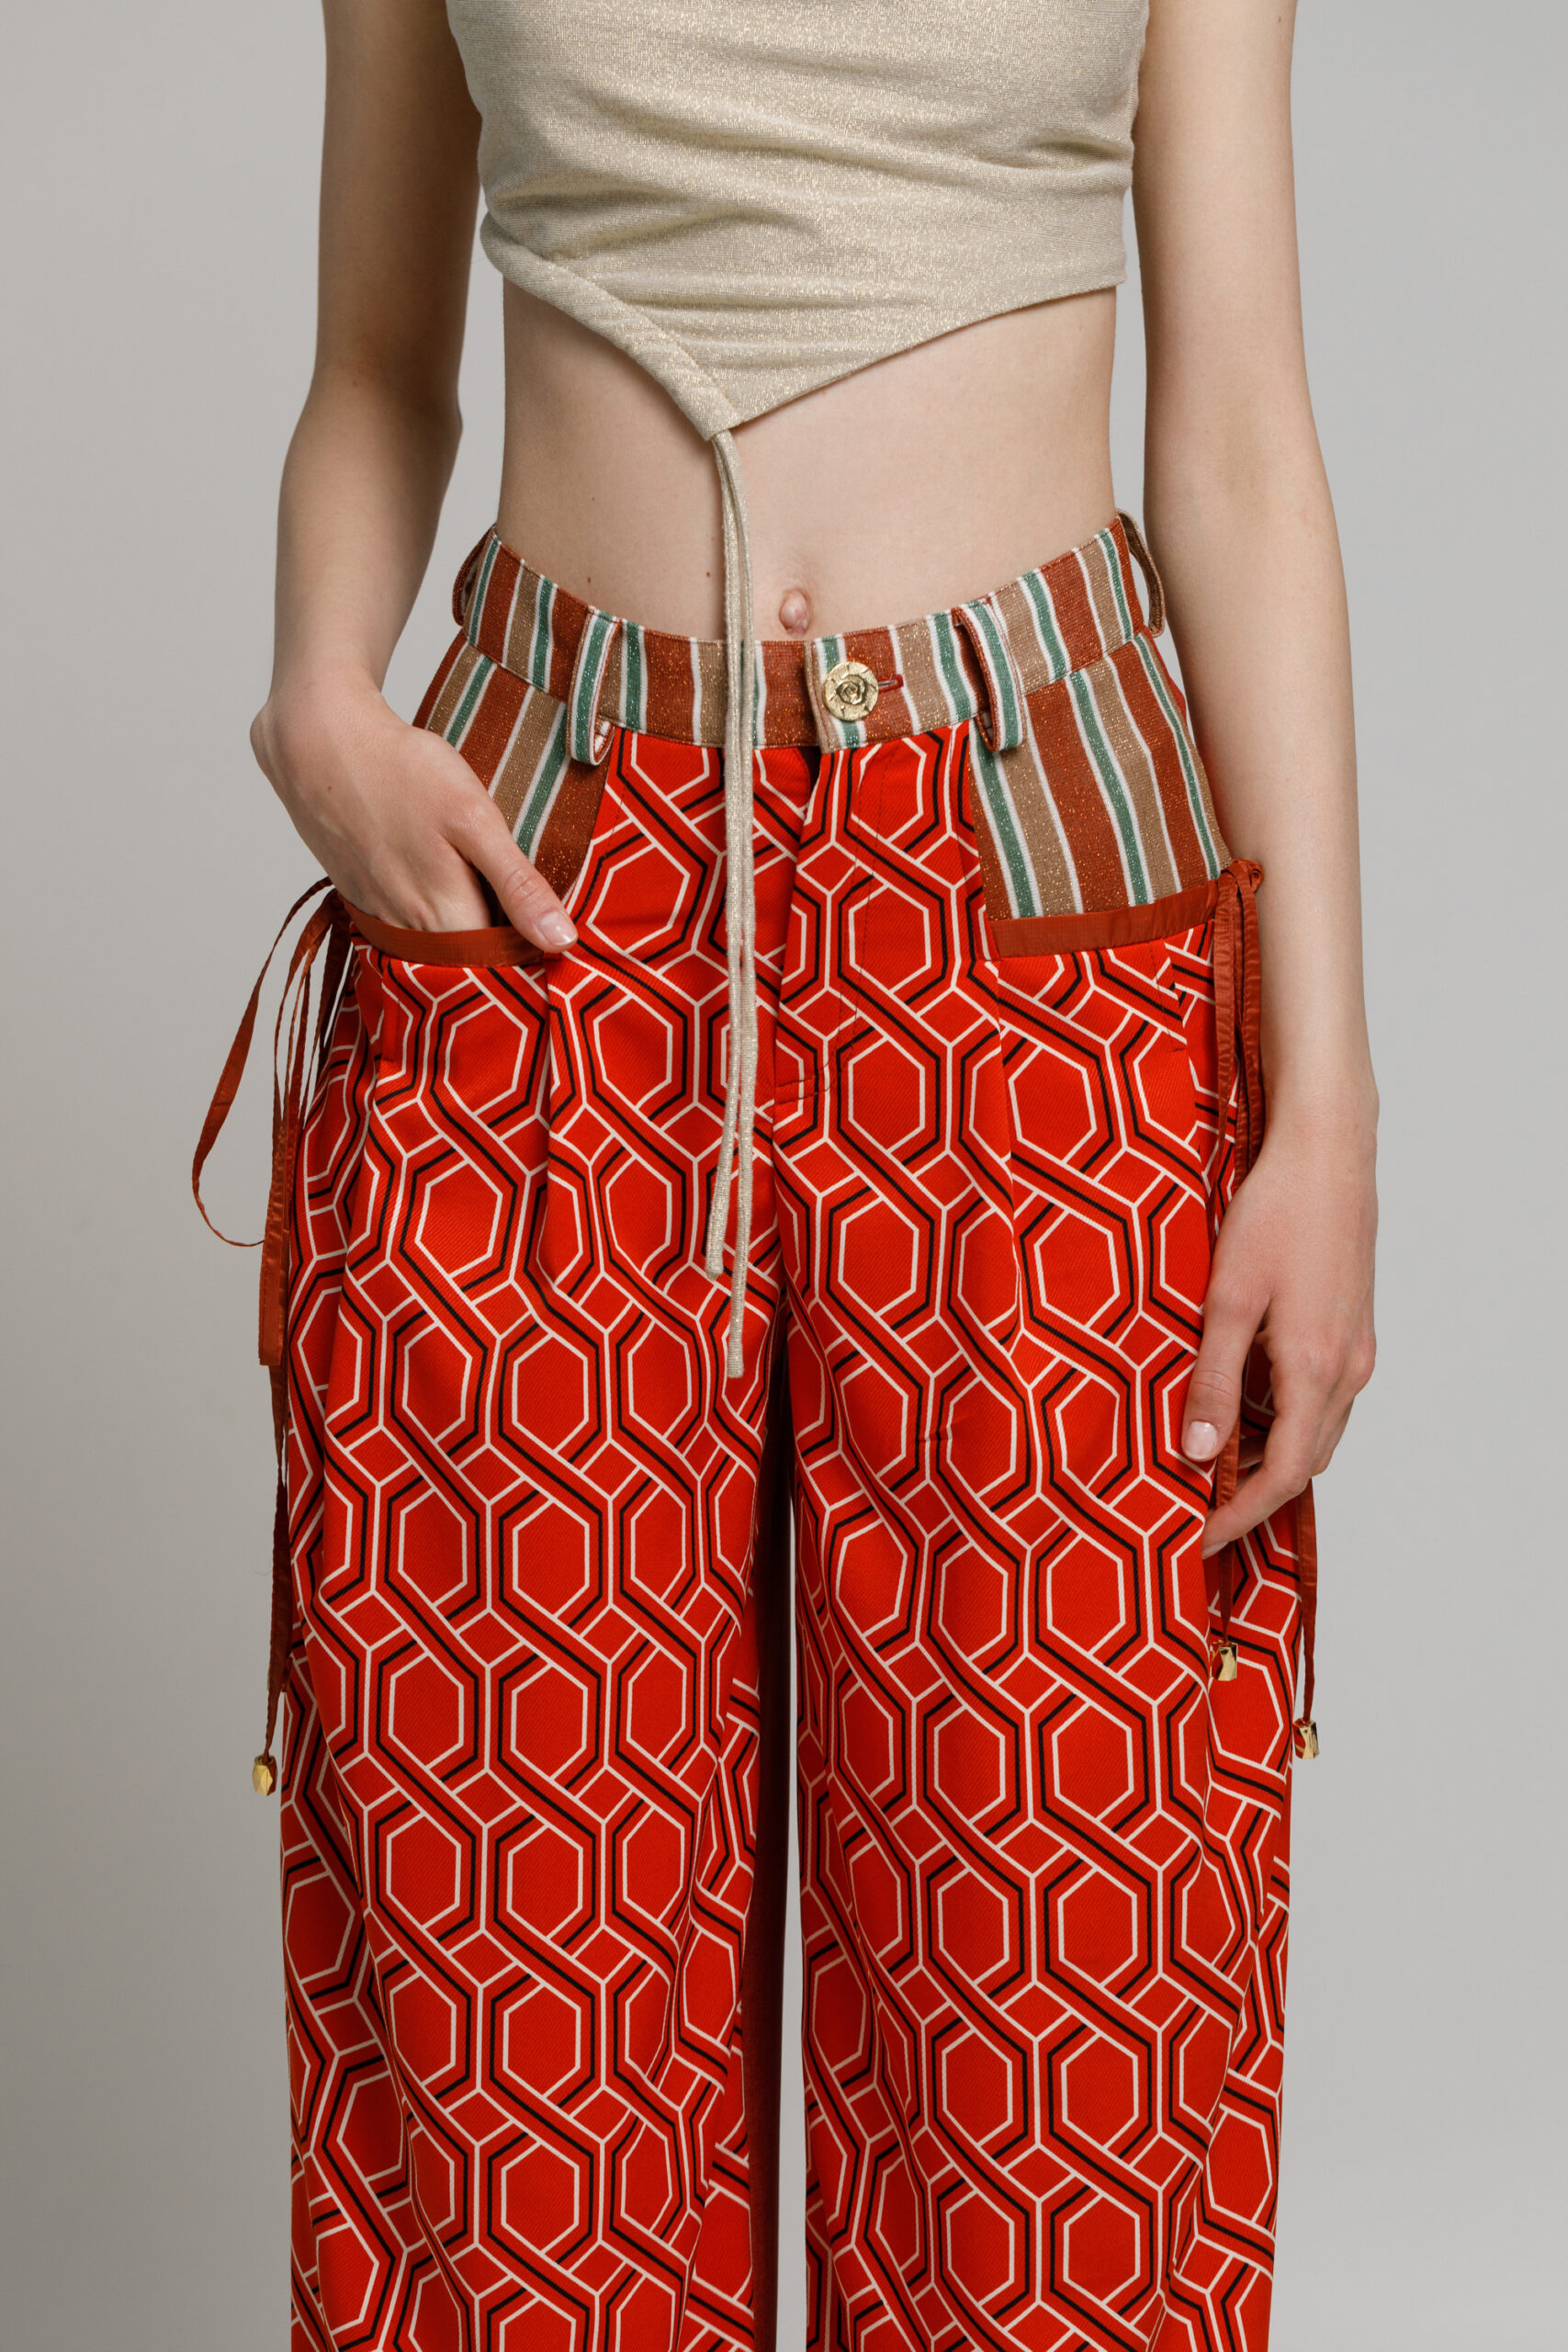 Pantalon BONNIE cu motive geometrice caramiziu. Materiale naturale, design unicat, cu broderie si aplicatii handmade